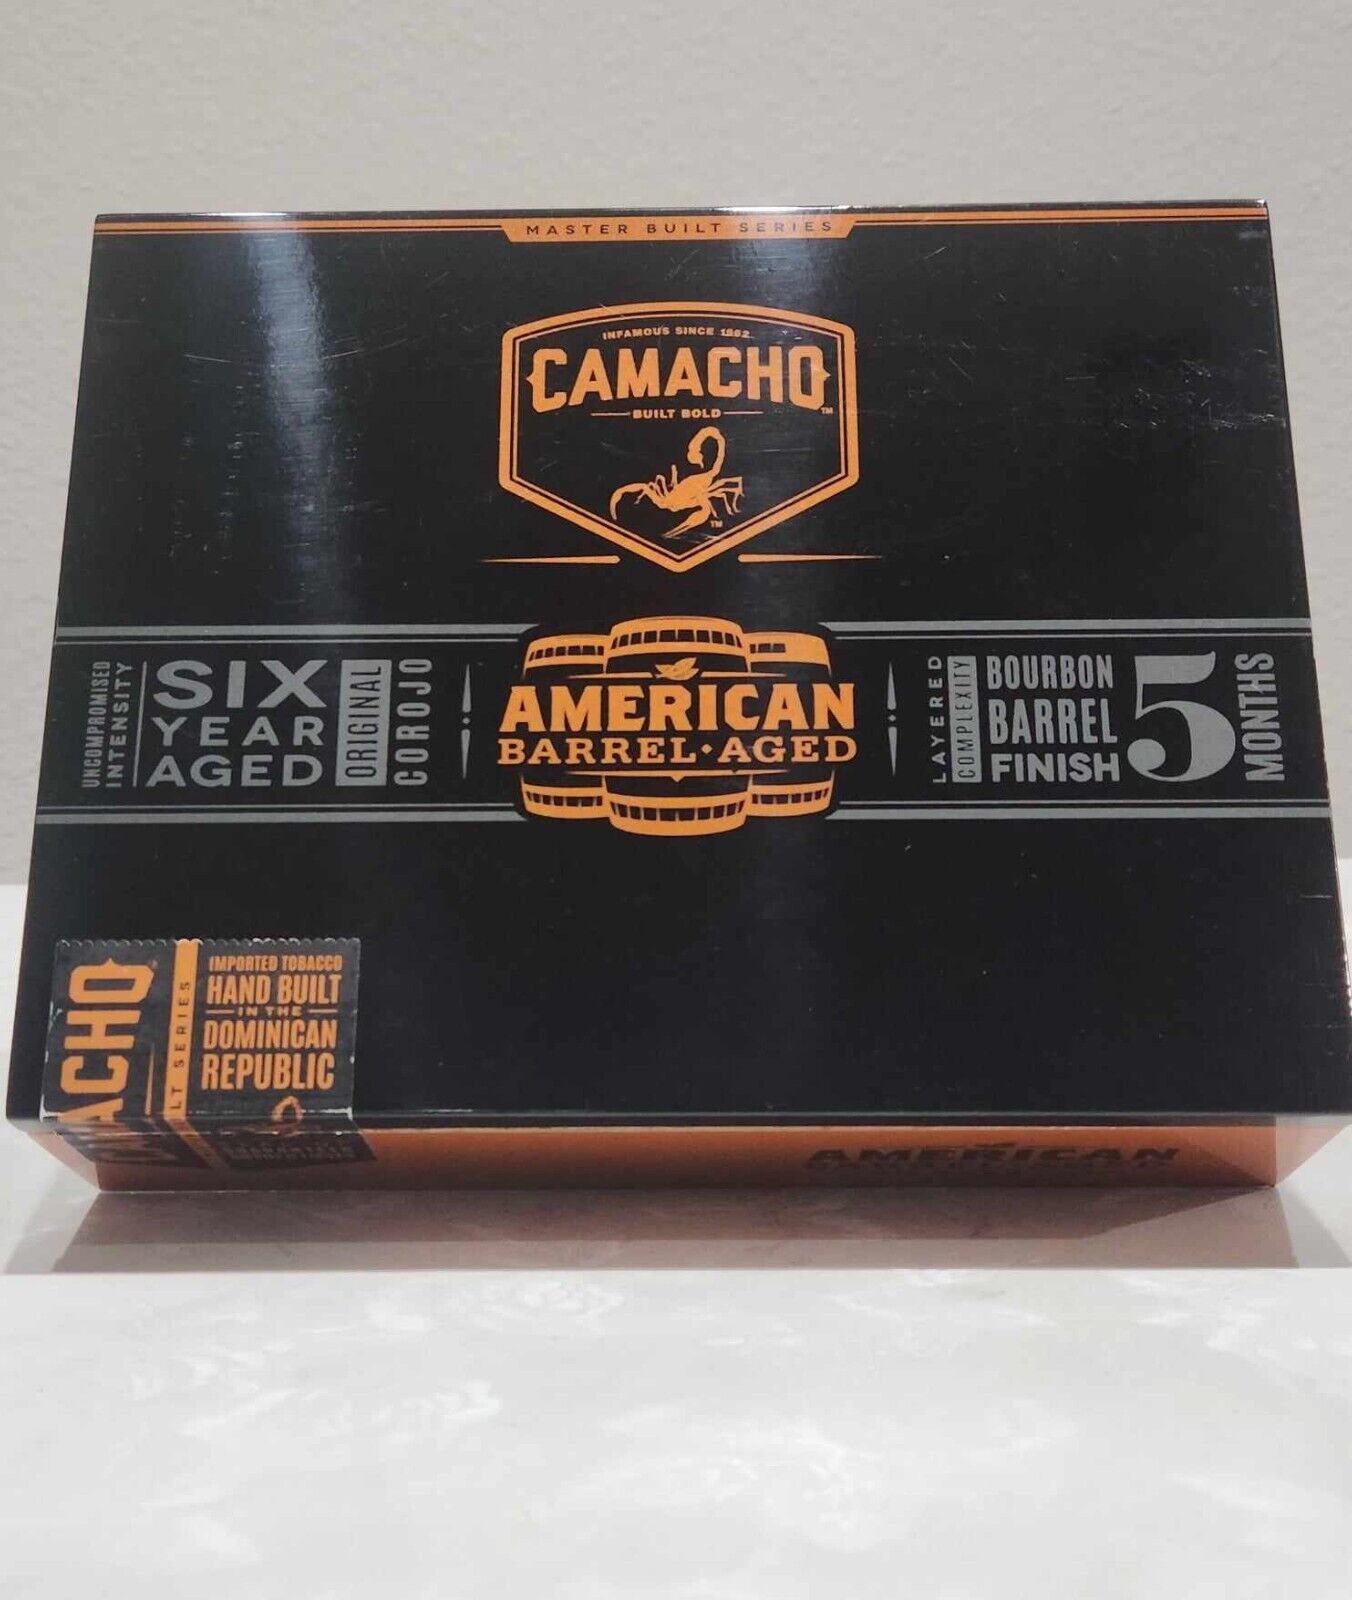 Camacho American Barrel Aged Cigar Box 10.25”x6.75”x2.5” Empty